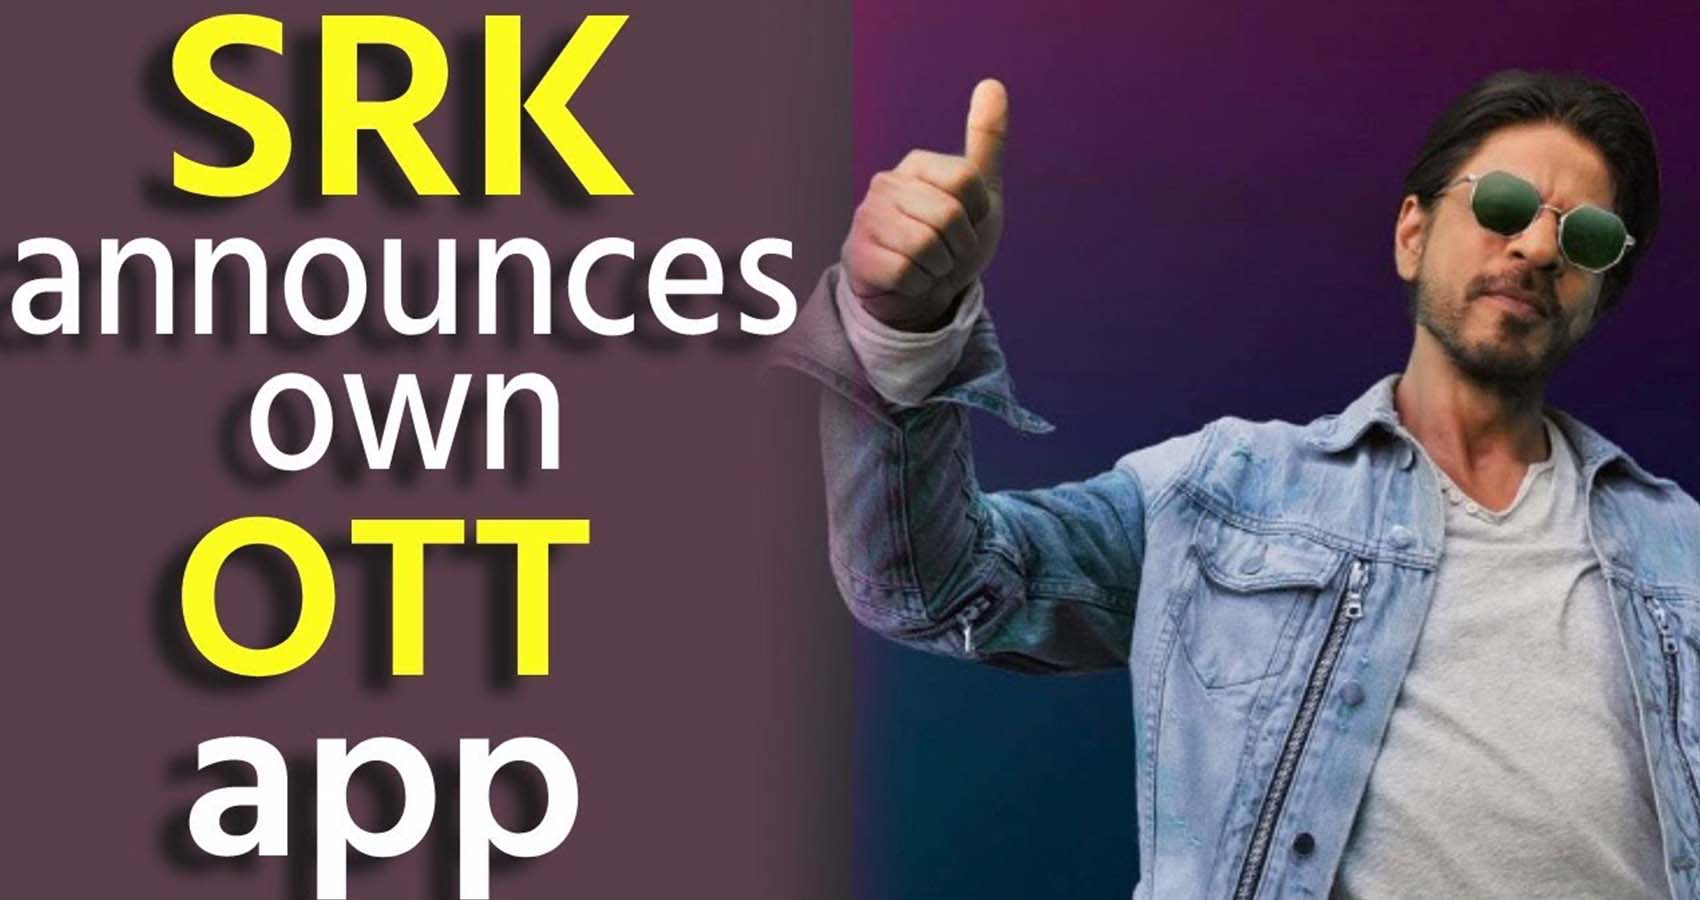 SRK Announces Own OTTAPP